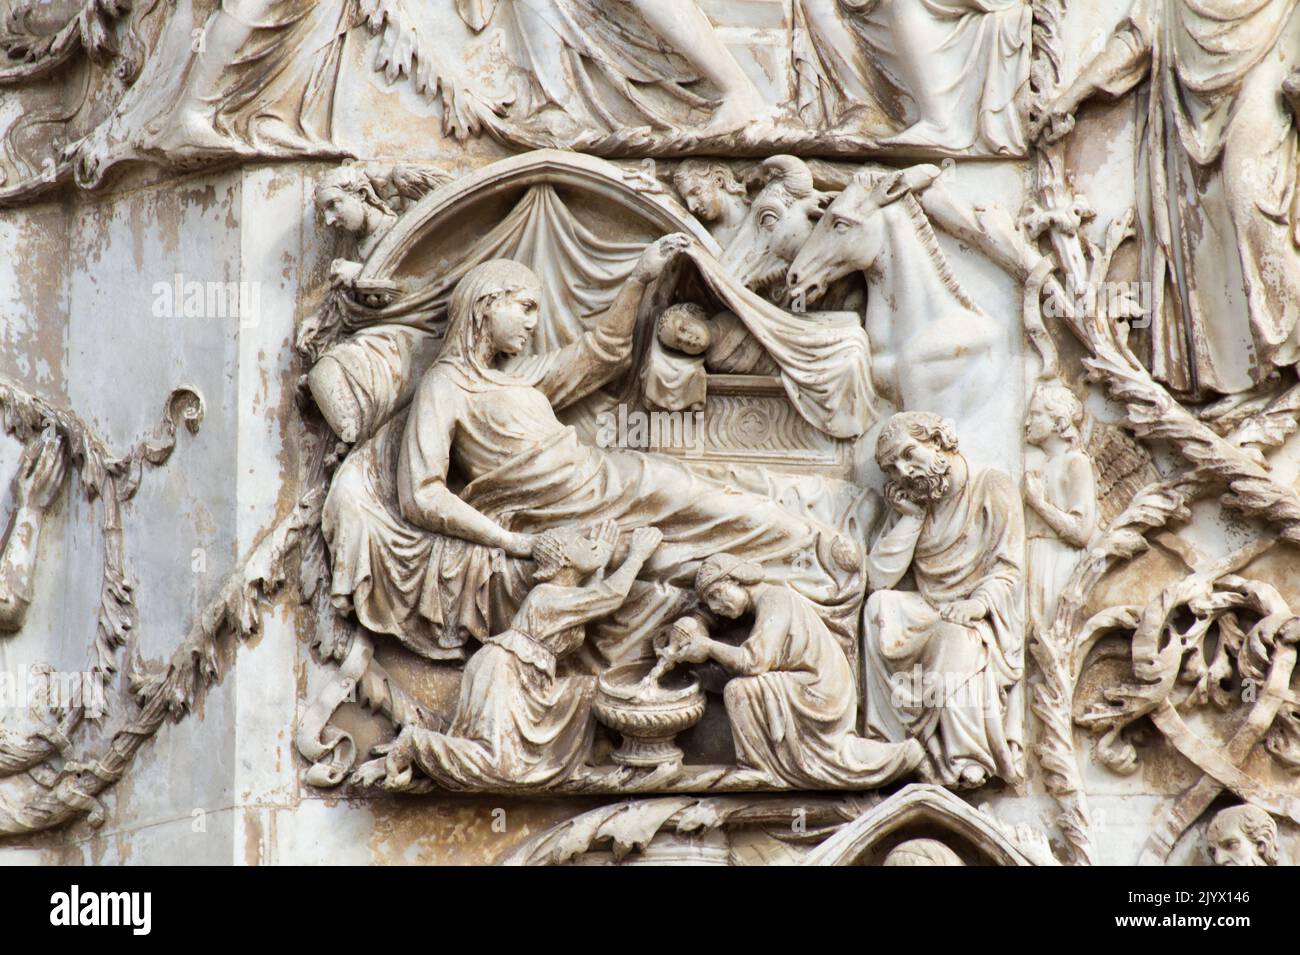 La natività di Gesù - bassorilievo dal 3th° pilastro (Storie del nuovo Testamento) - facciata della cattedrale di Orvieto - Umbria - Italia Foto Stock